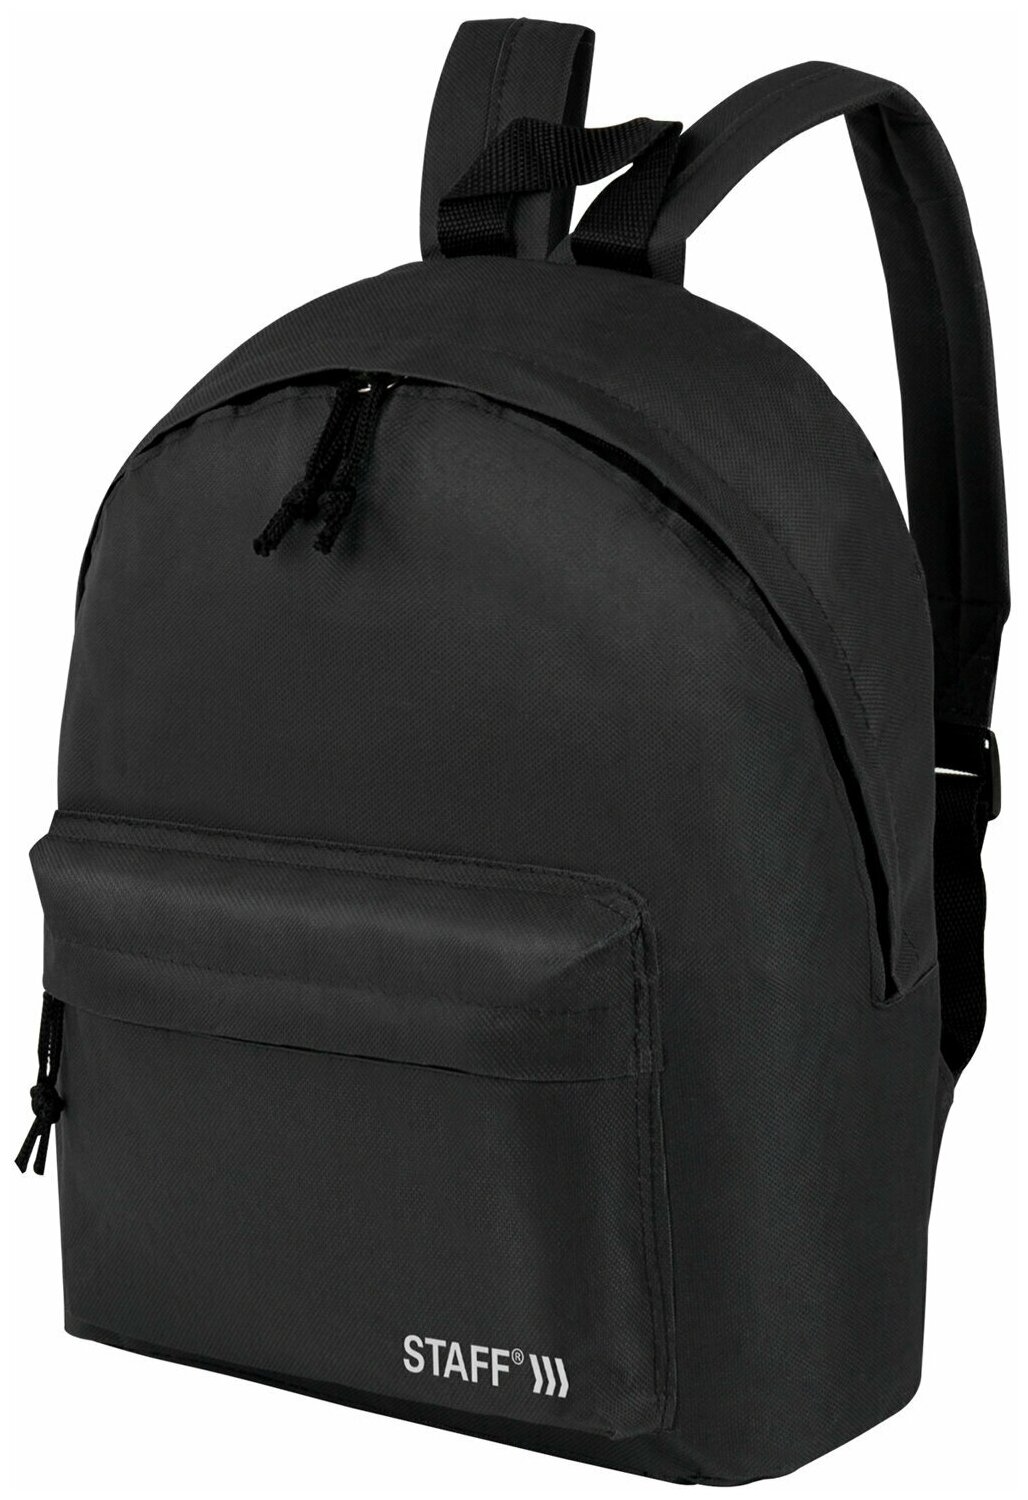 Рюкзак/ранец/портфель школьный подростковый для мальчика / девочки вместительный Staff Strike универсальный 3 кармана черно-серый 45х27х12 см